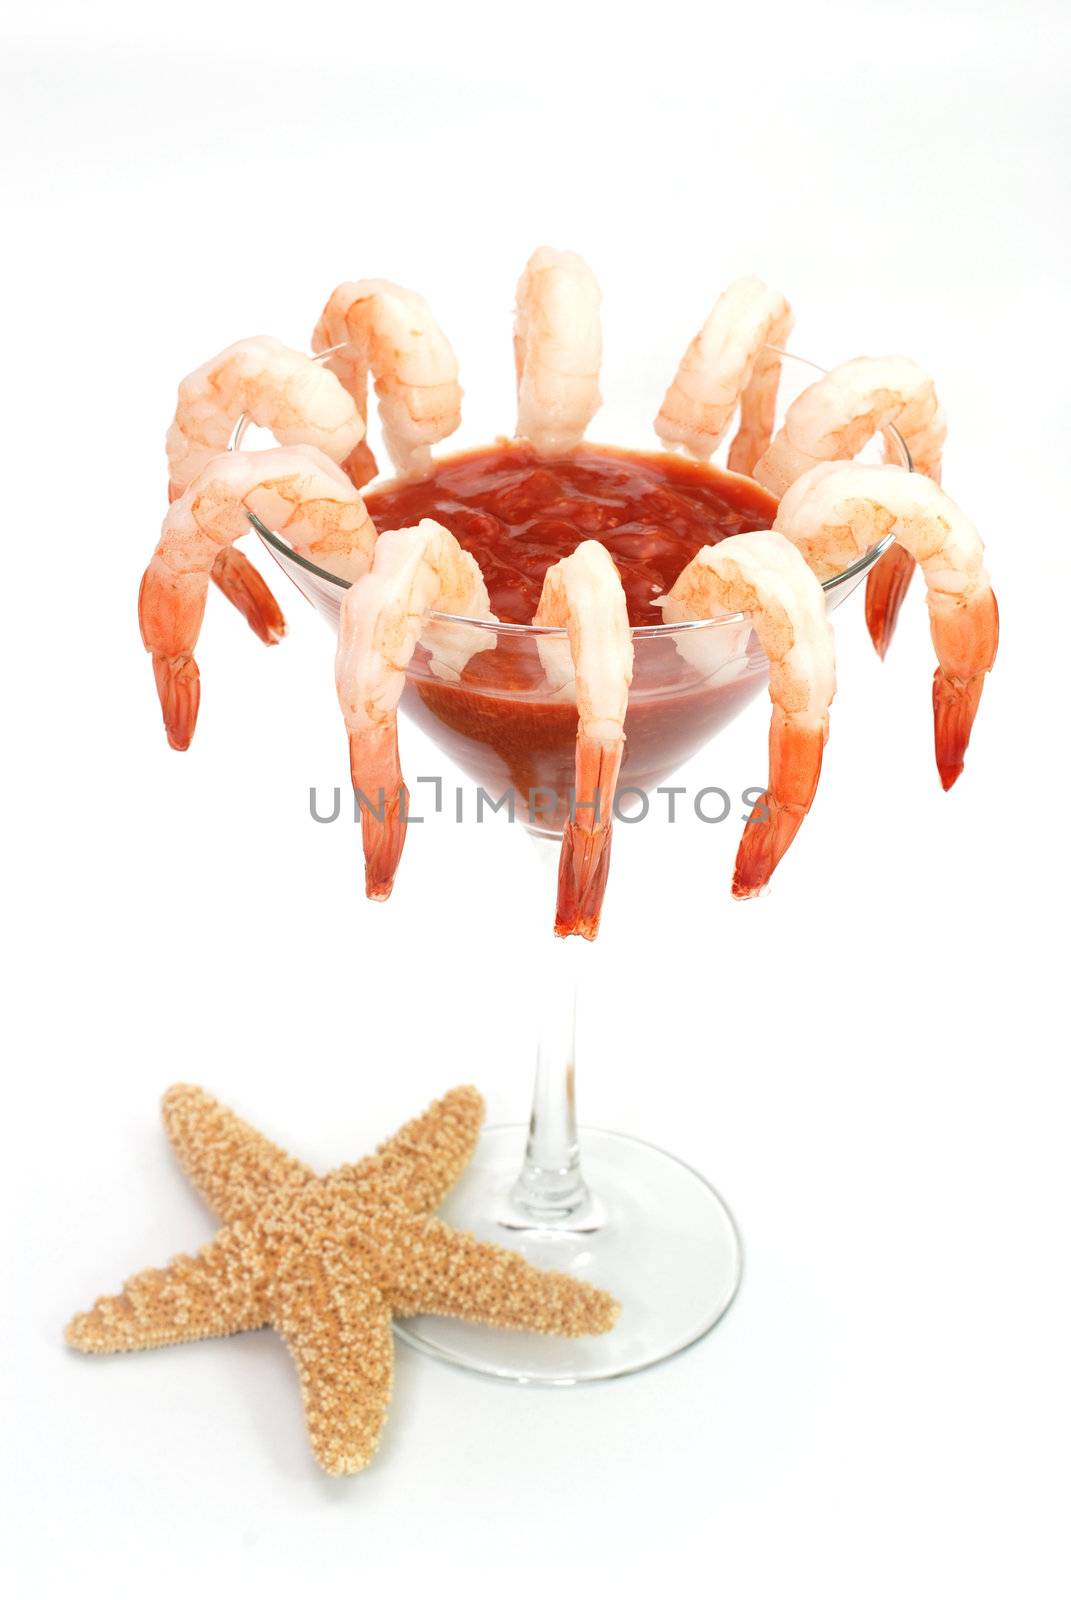 Shrimp Cocktail by dehooks